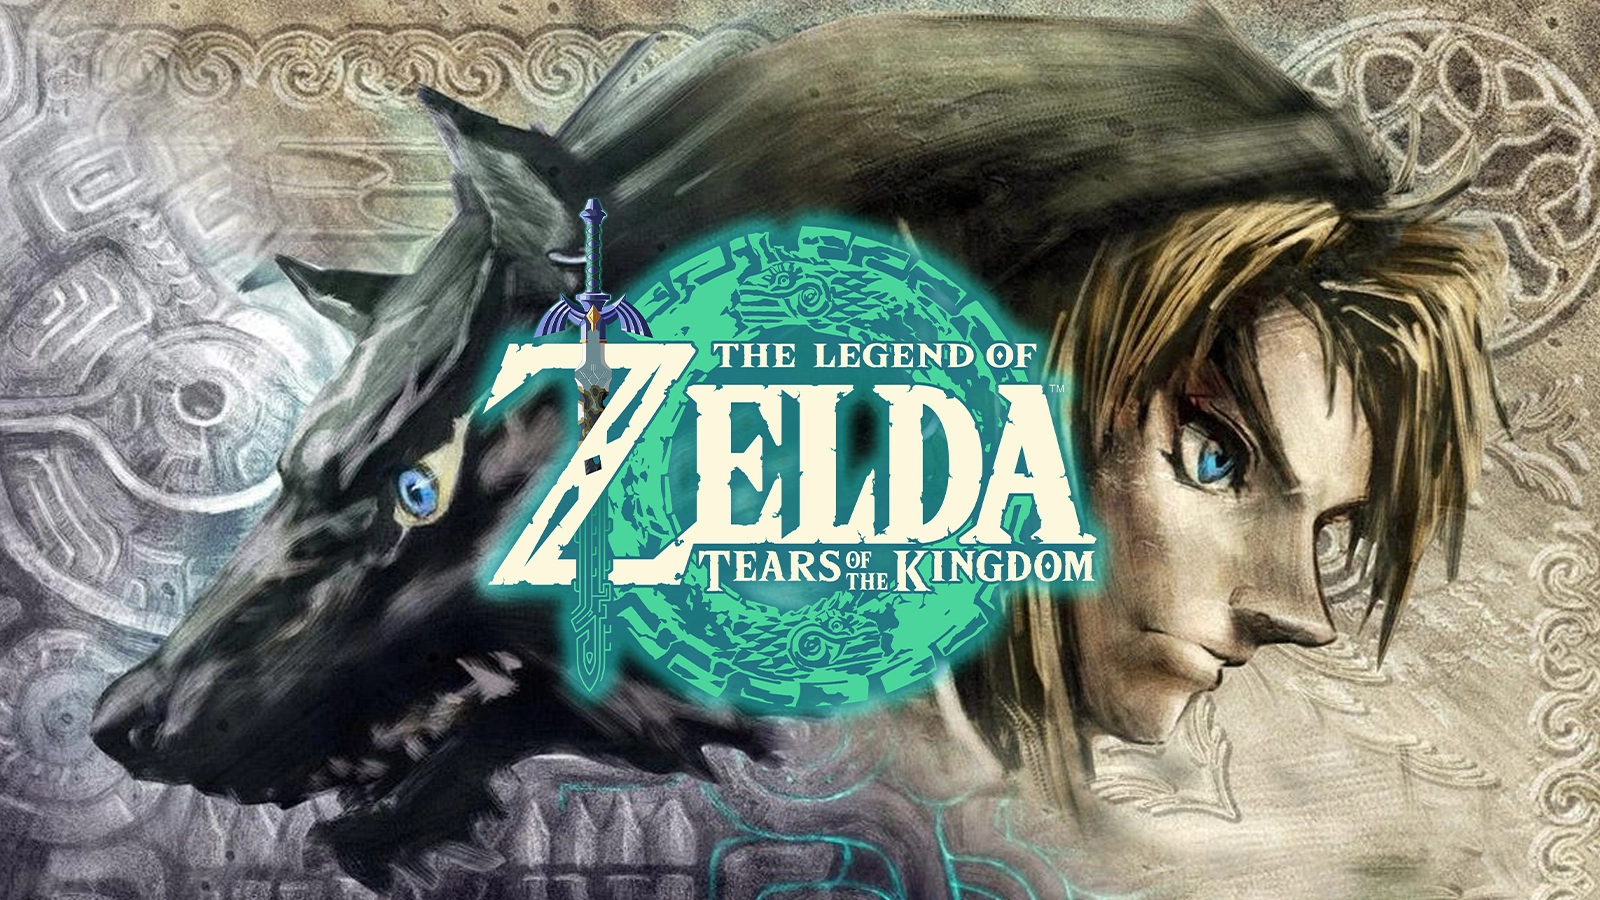 the legend of Zelda breath of the wild